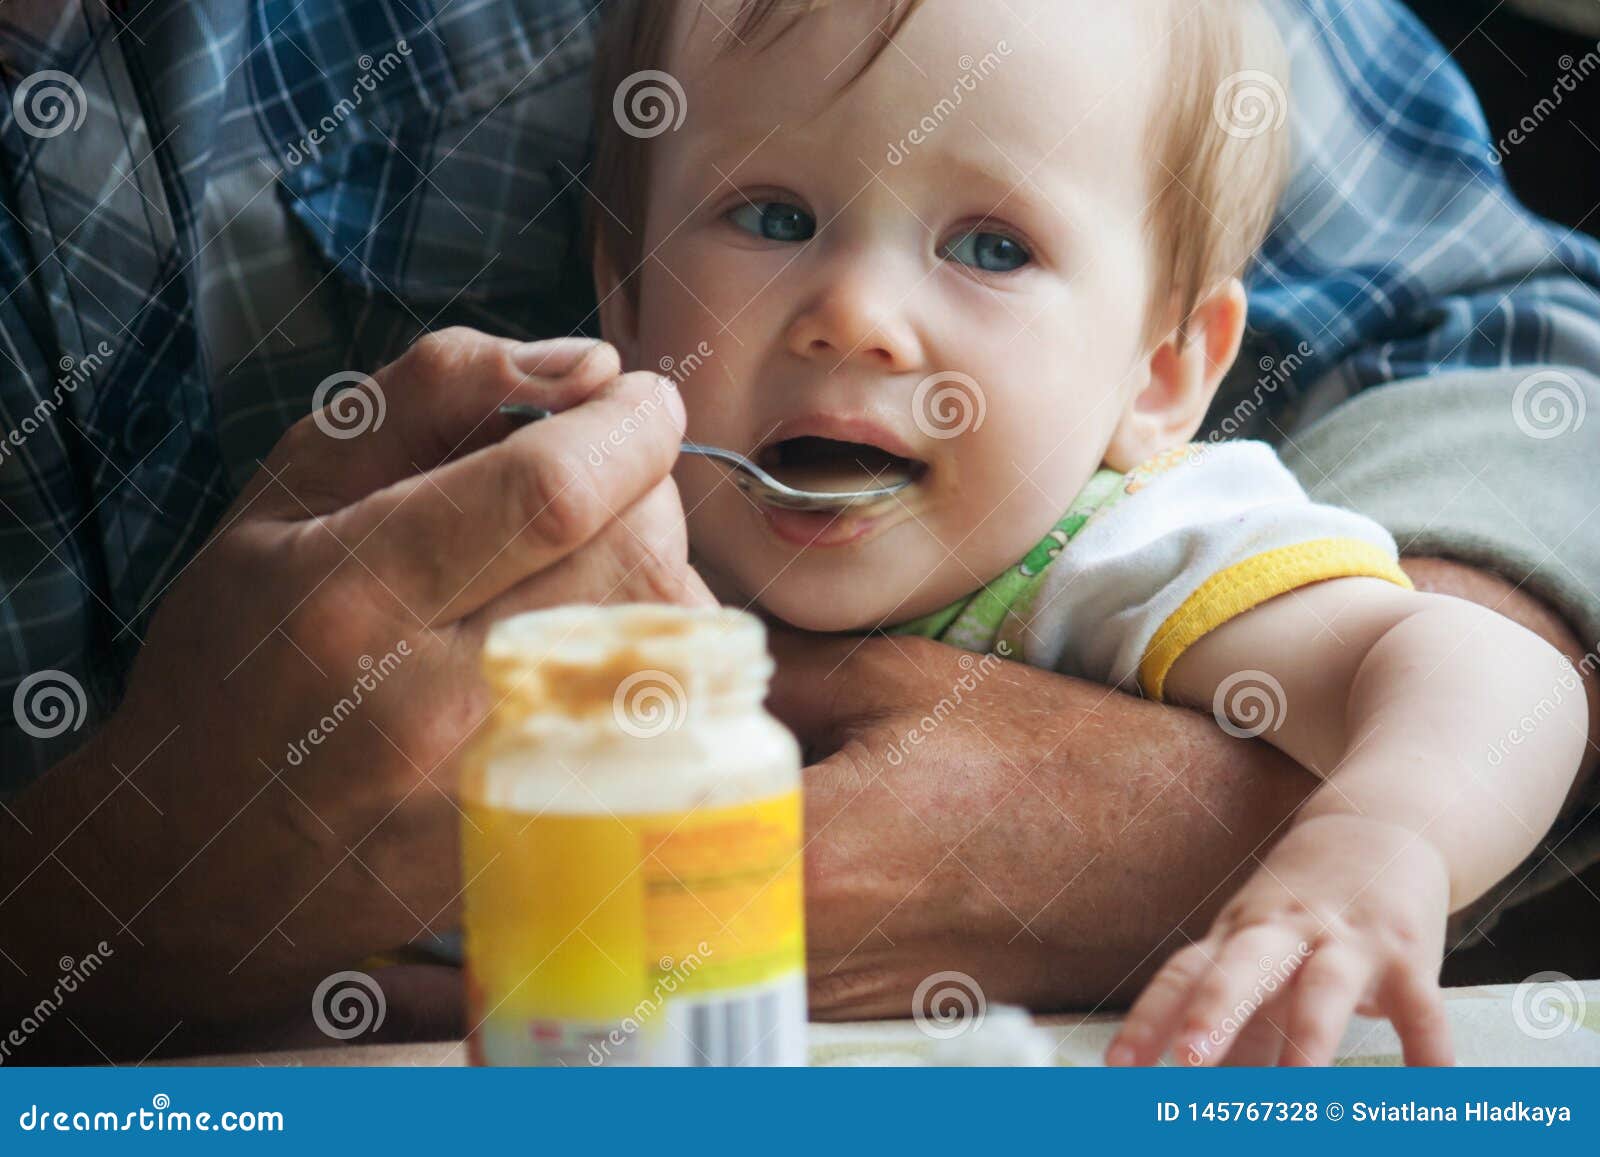 Un pequeño bebé se sienta en los brazos de su abuelo y come un puré de la fruta con una cuchara Introducción de comidas complementarias en un niño Las manos ásperas grandes apoyan suavemente al bebé y se alimentan con una cuchara